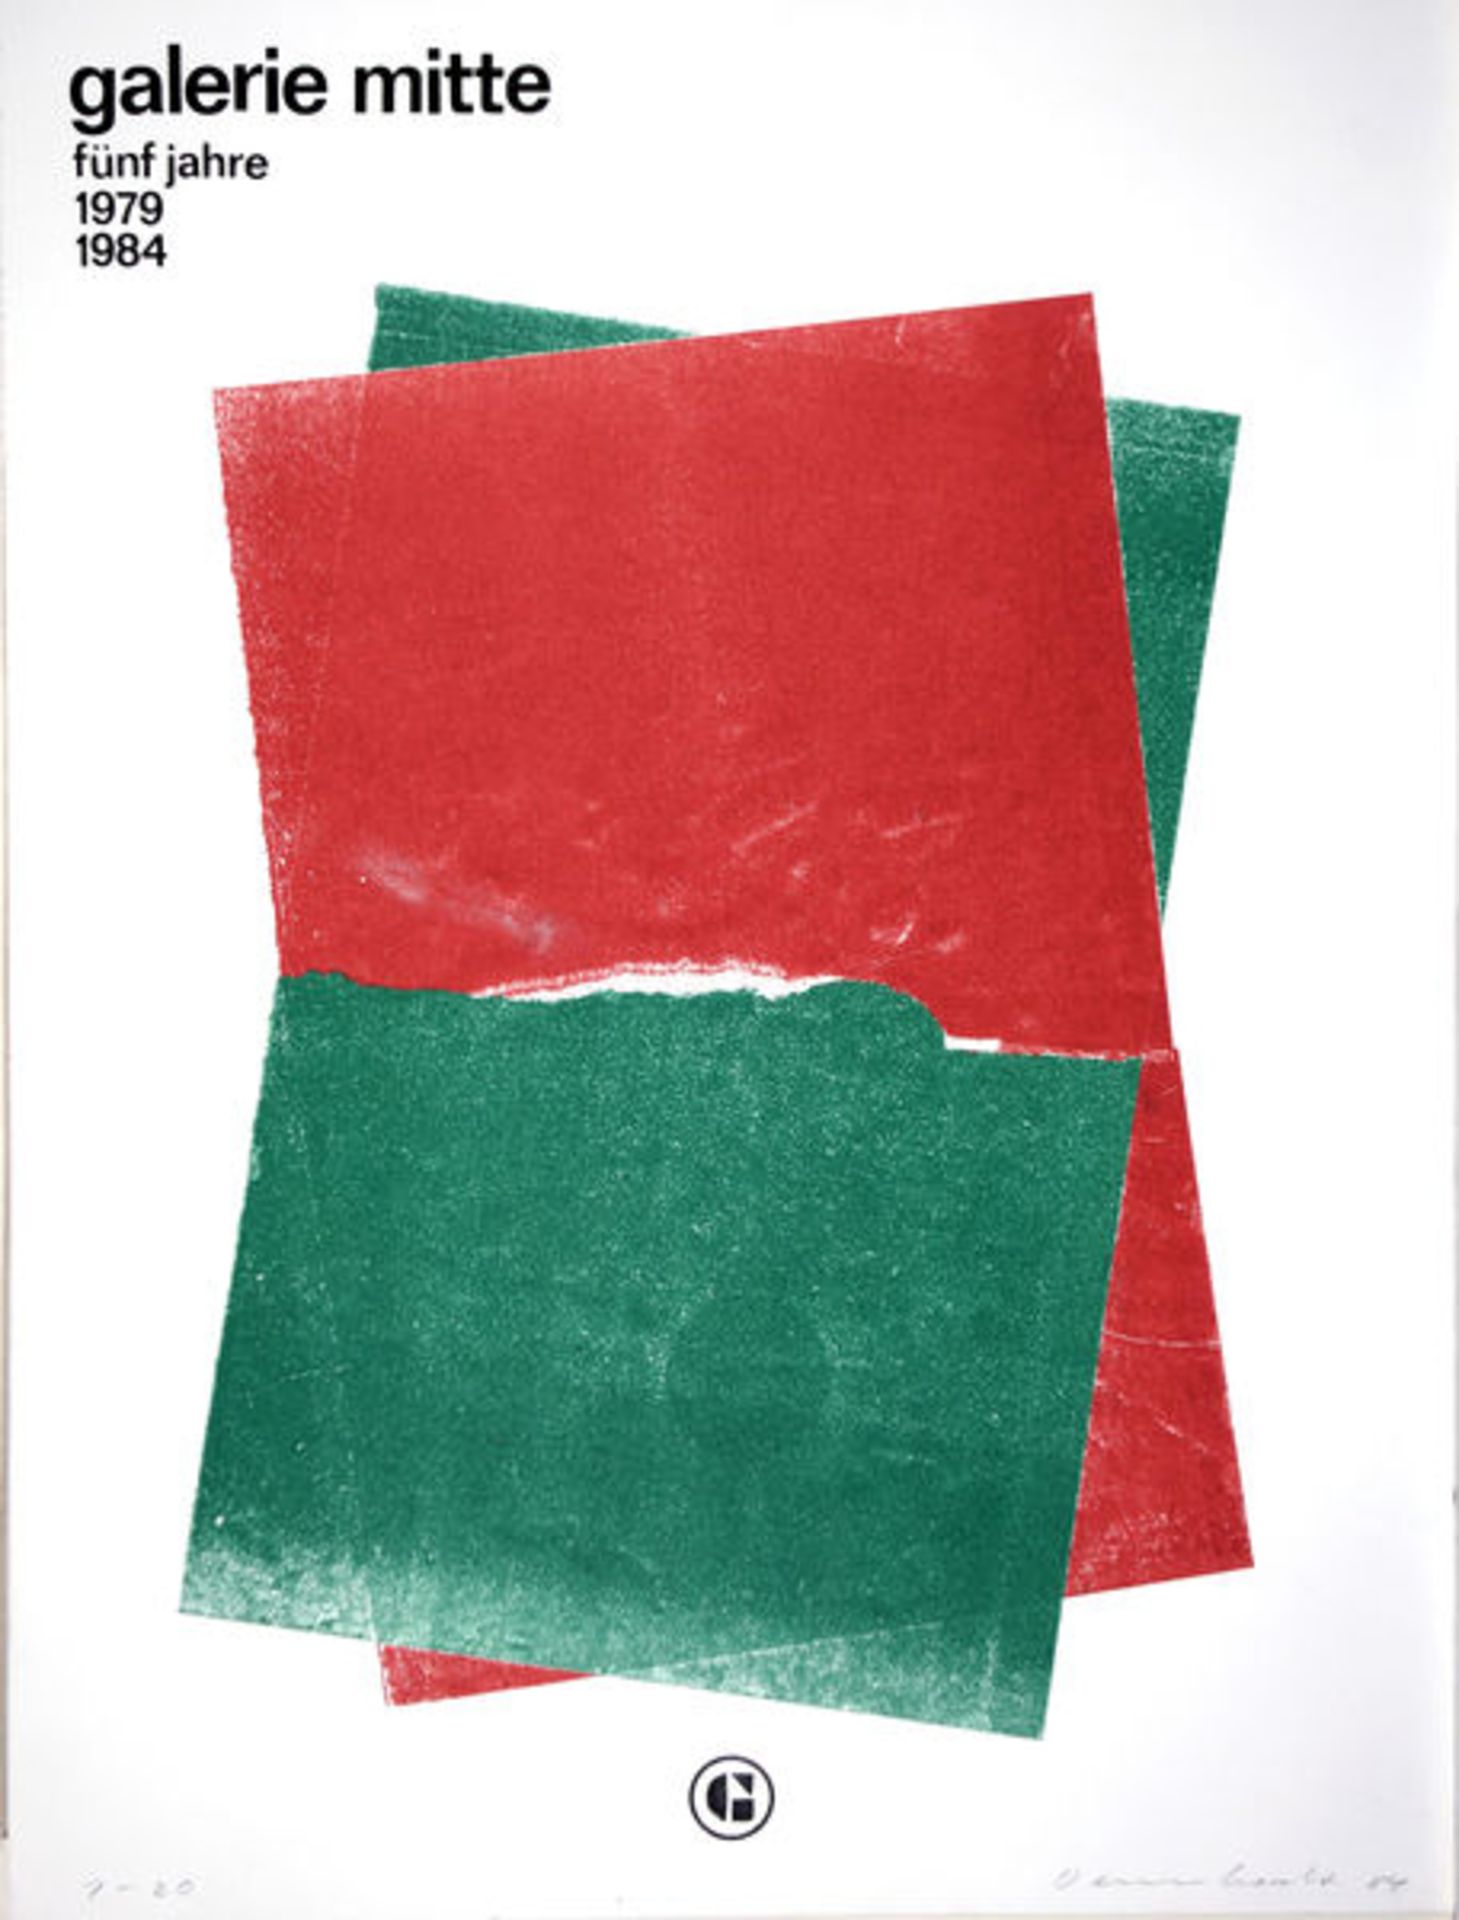 Dennhardt, Klaus Monotypie in Grün und Rot auf Karton, 53,5 x 40,4 cm Ausstellungsplakat Galerie